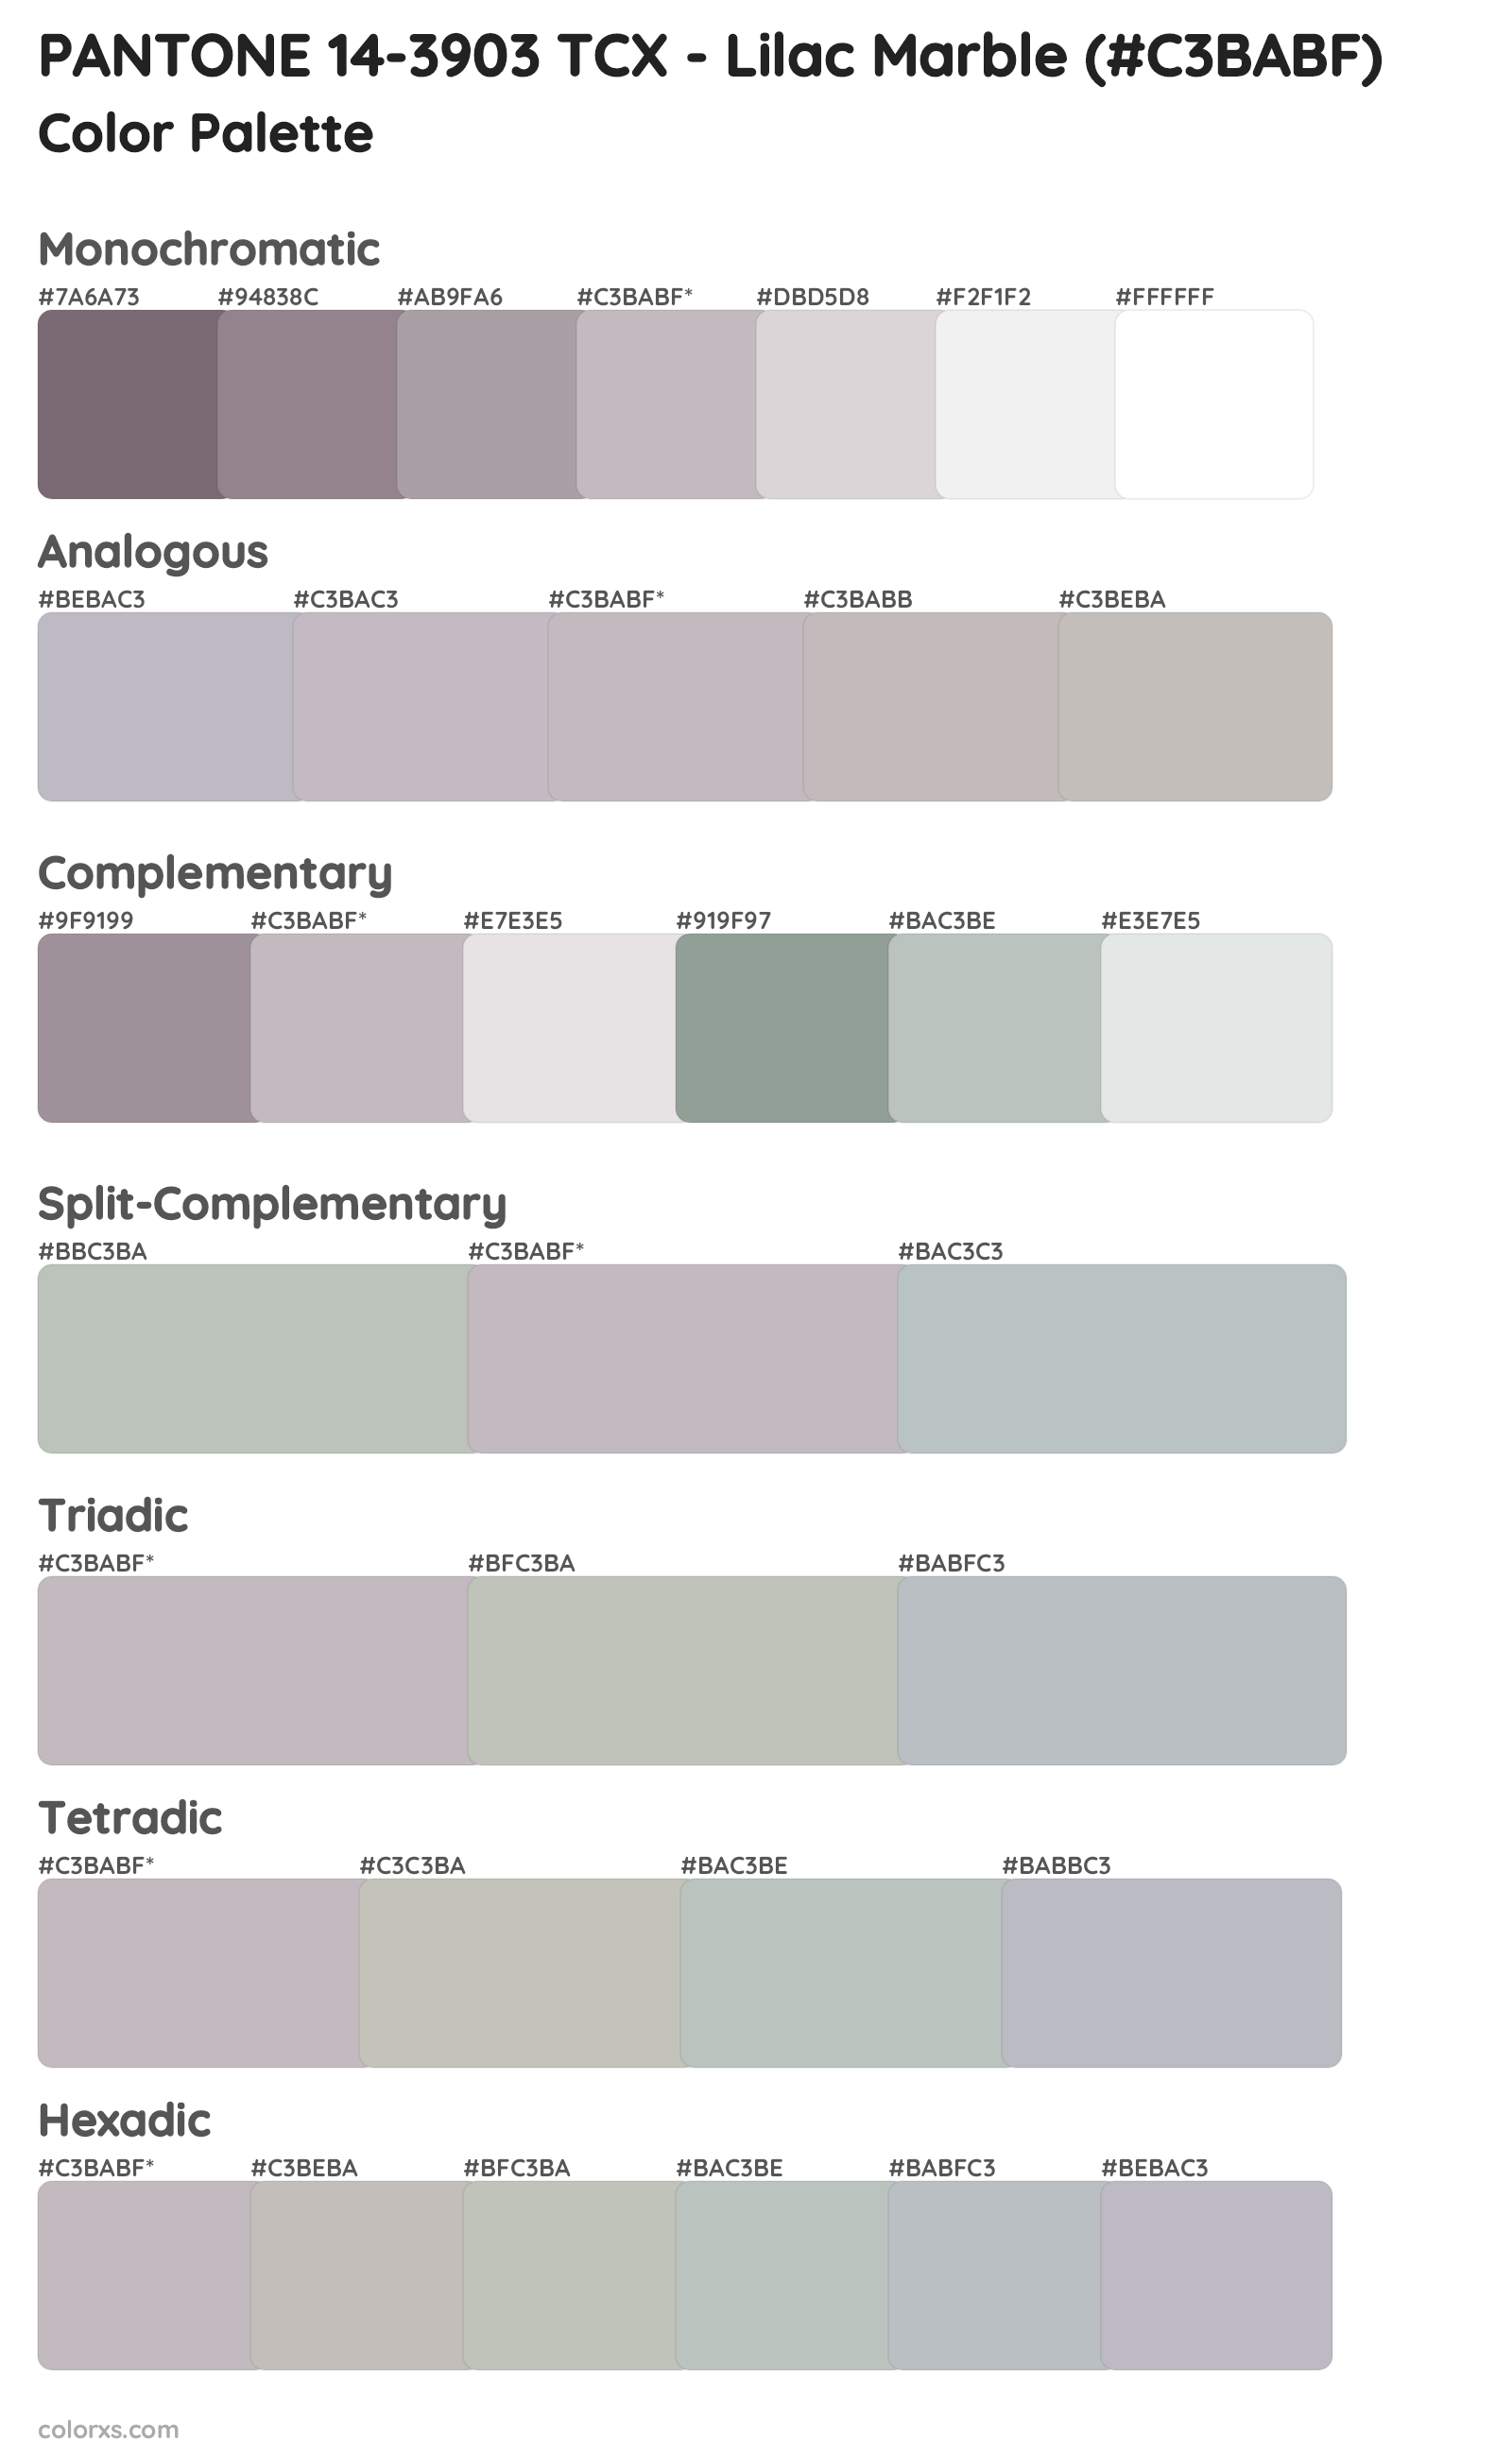 PANTONE 14-3903 TCX - Lilac Marble Color Scheme Palettes